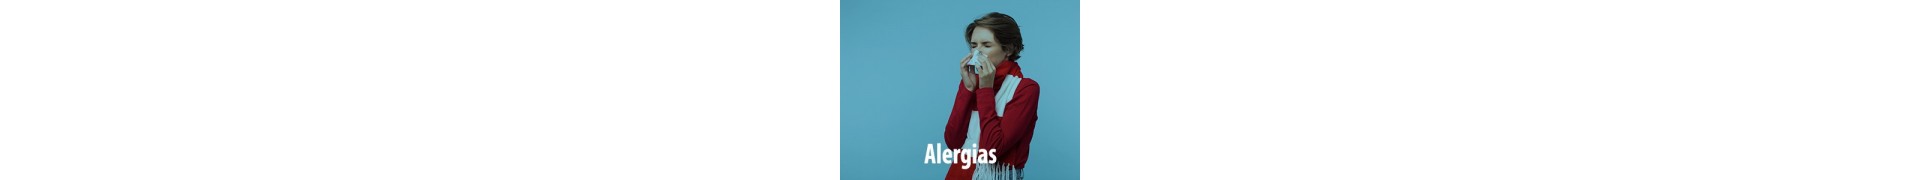 Alergias - Mifarmaonline.es